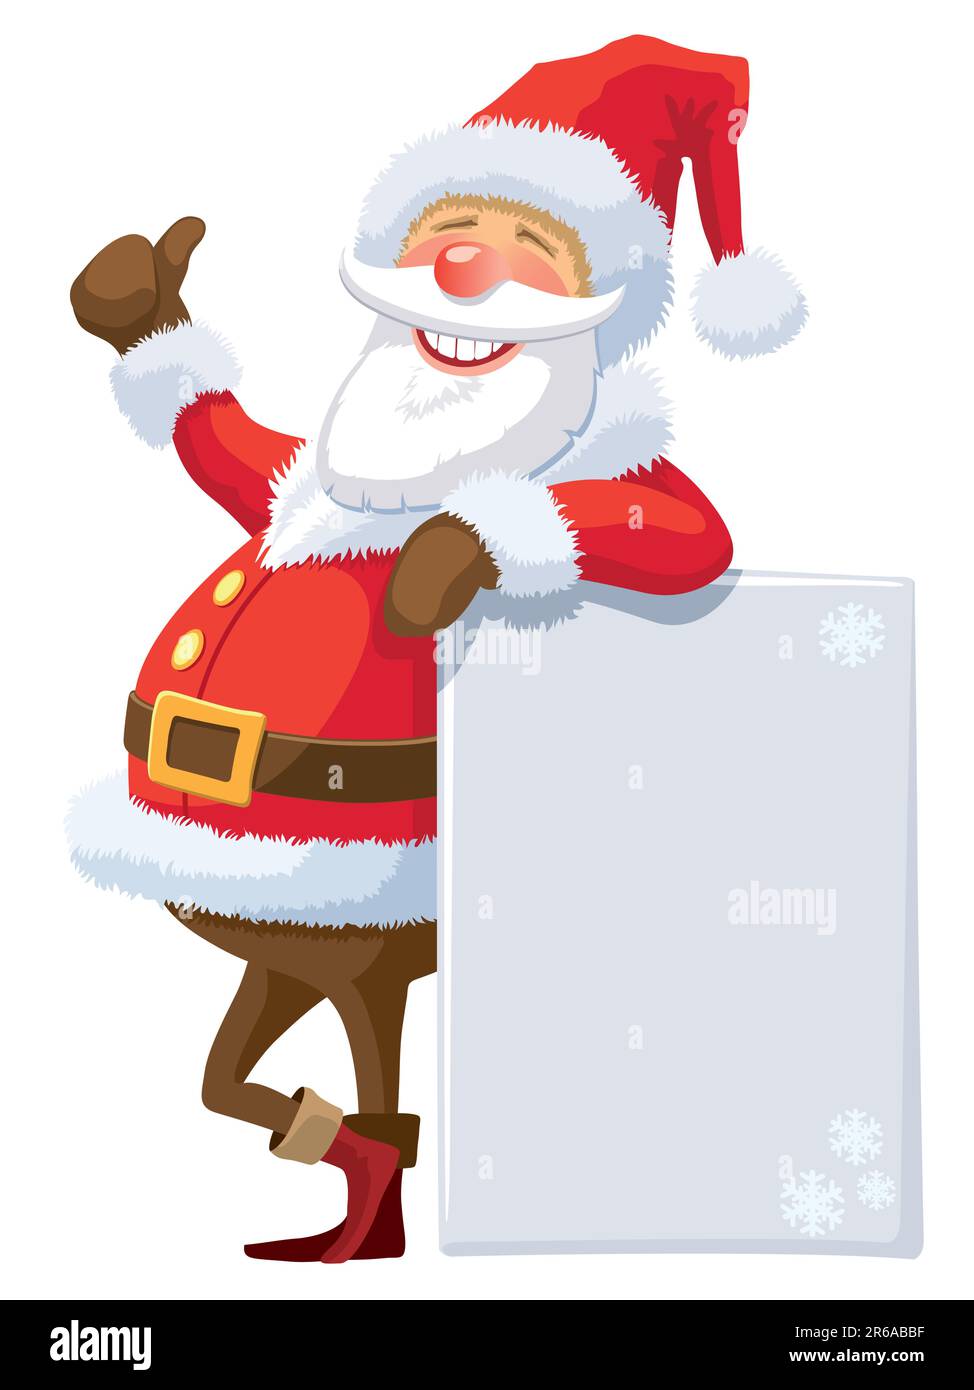 Père Noël avec affiche vierge sur fond blanc Image Vectorielle Stock - Alamy